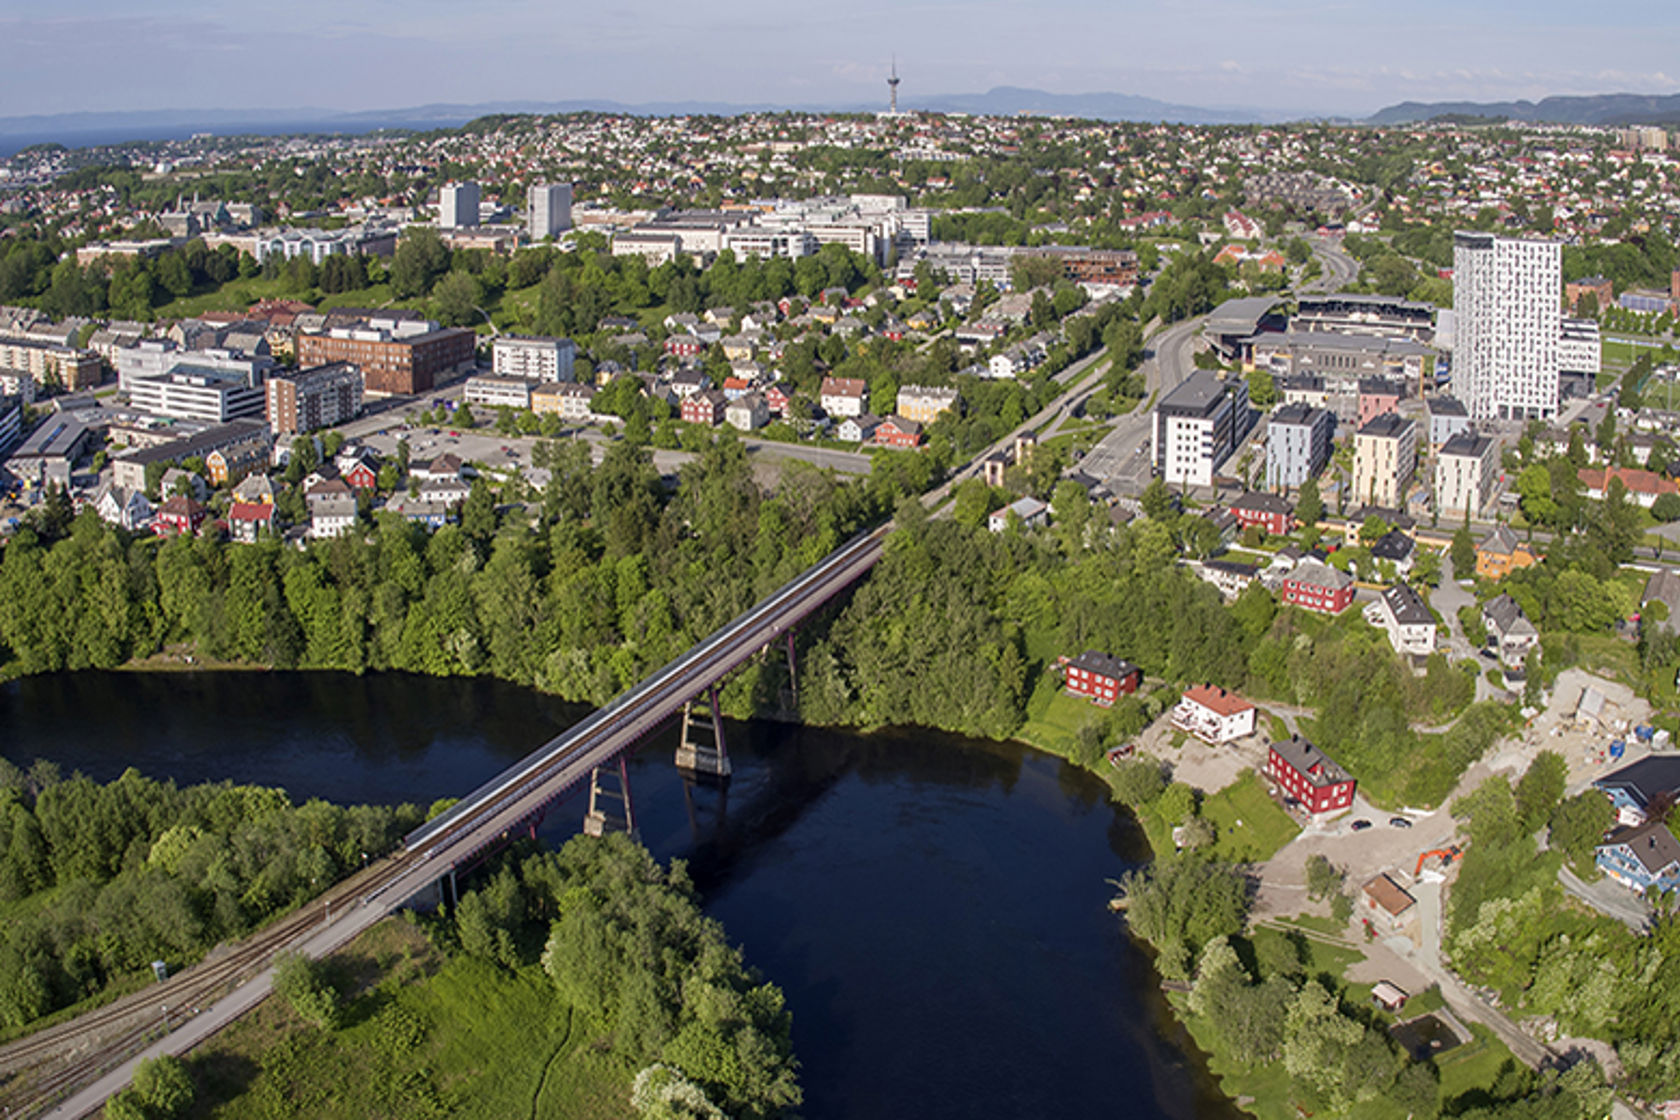 Oversiktsbilde over en del av Trondheim, med elv, bru, grønn park og bolighus